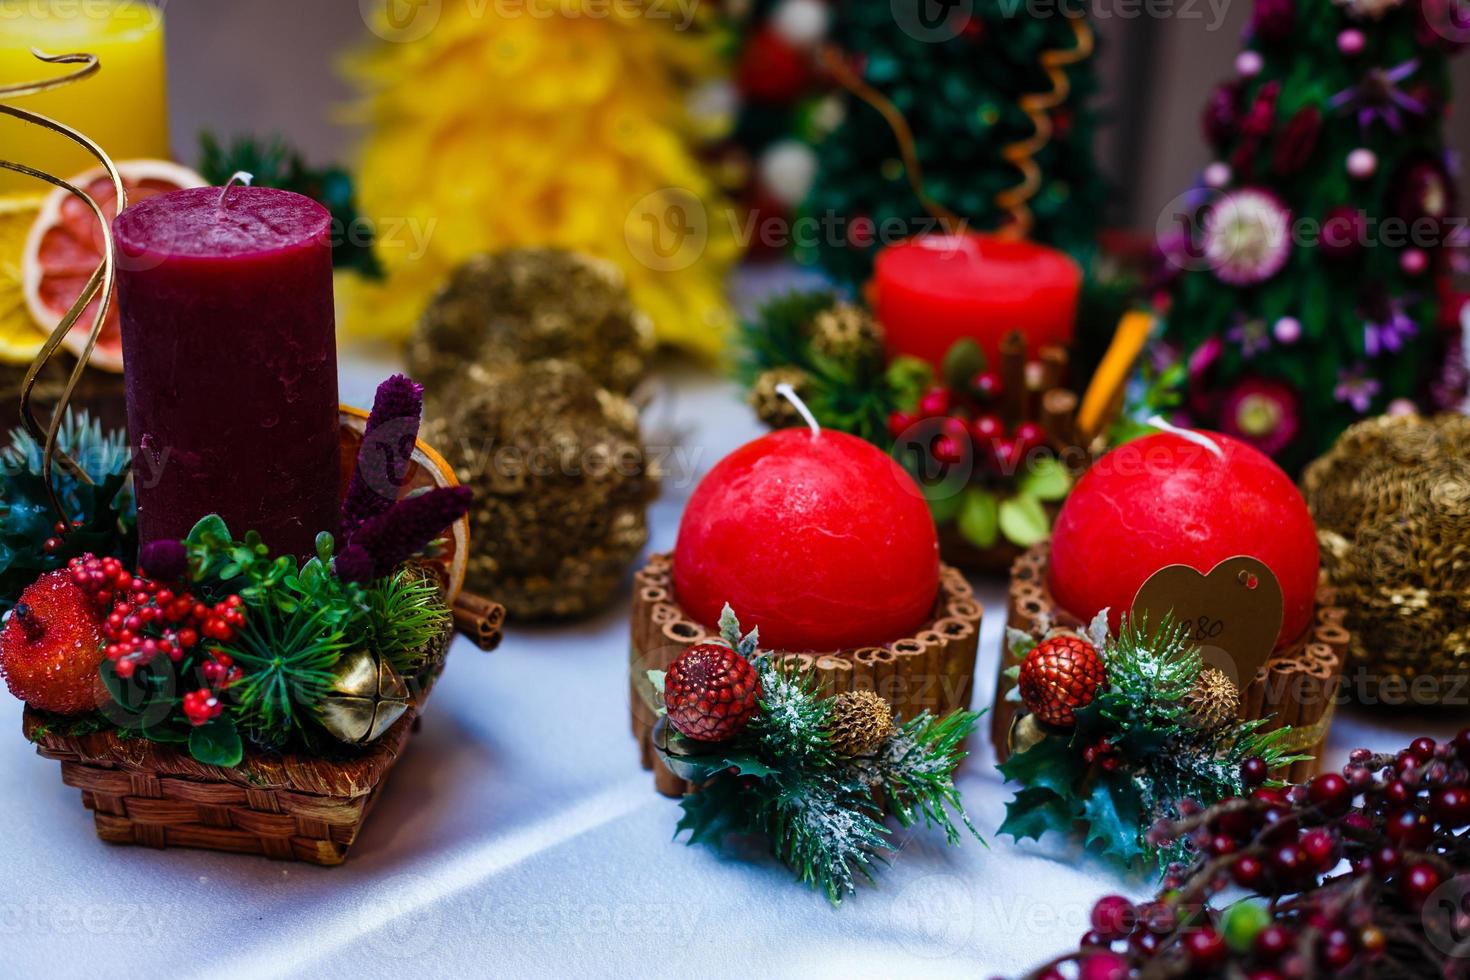 ljus dekorerad med kanel pinnar och röd äpplen, jul dekoration foto